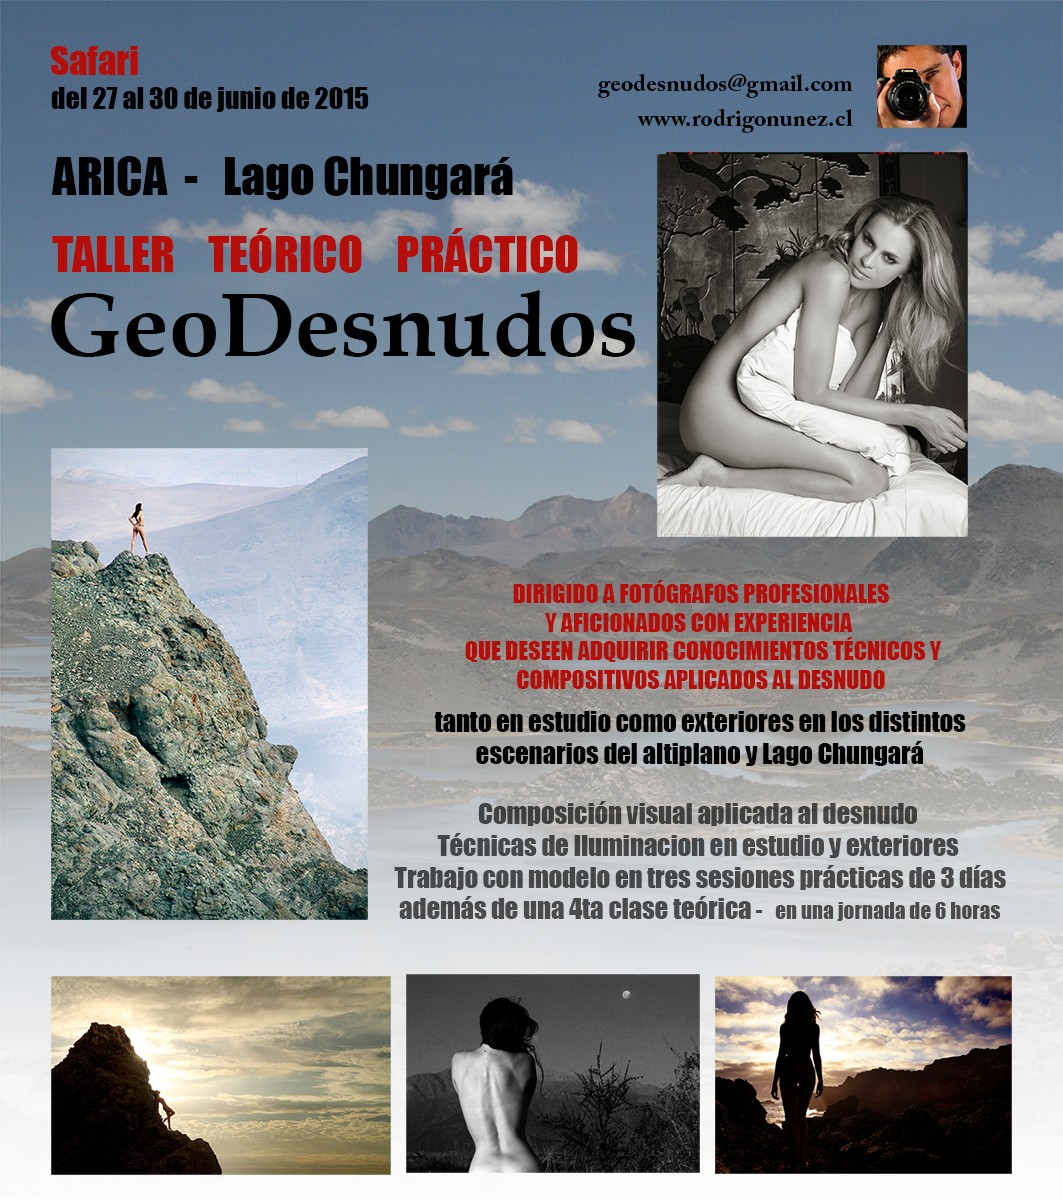 Invitan a participar en proyecto fotográfico Geodesnudos